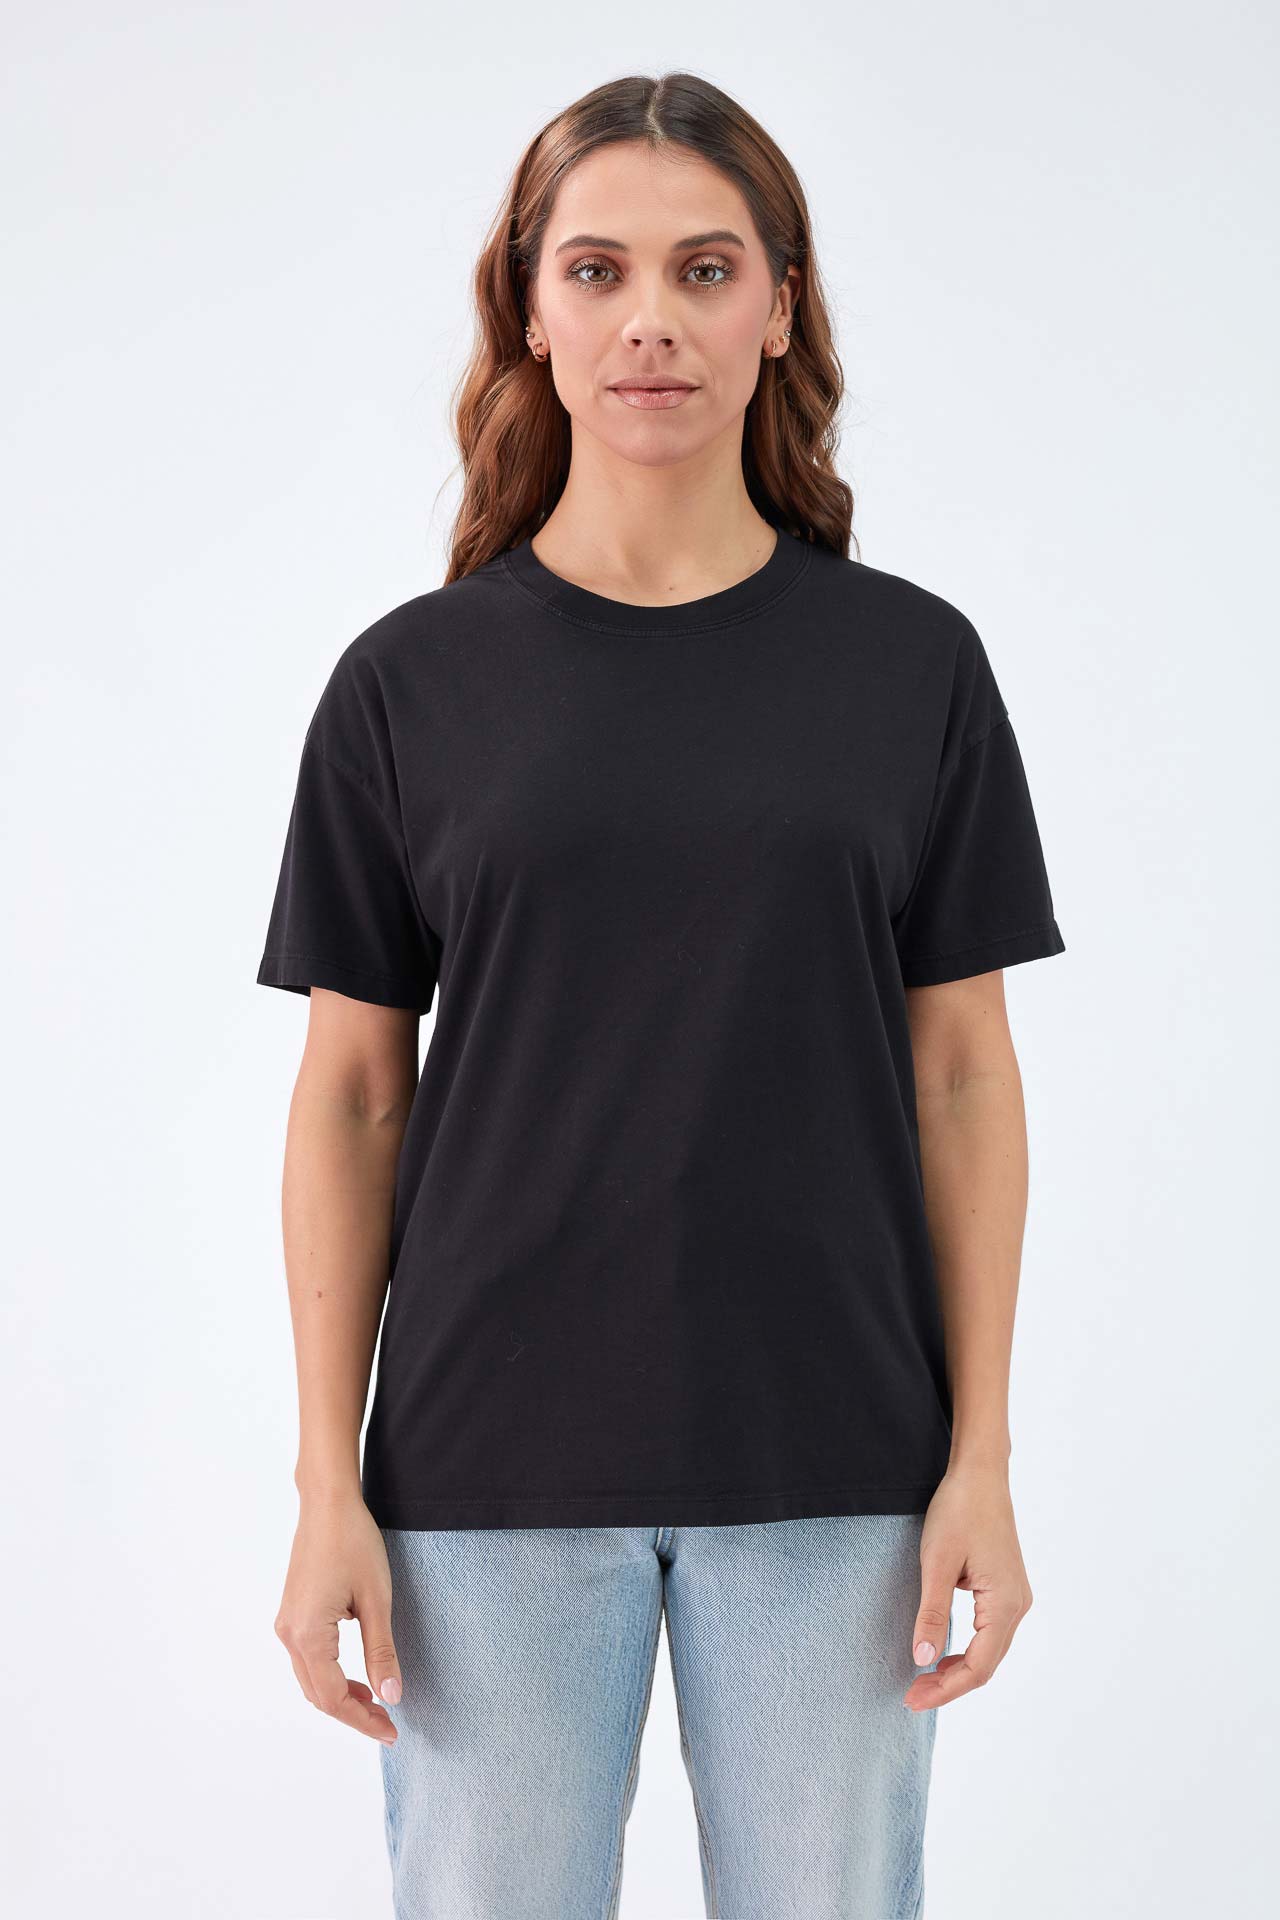 Compre AnaOno Mulher Beleza T-Shirt, Preto- XX Grande